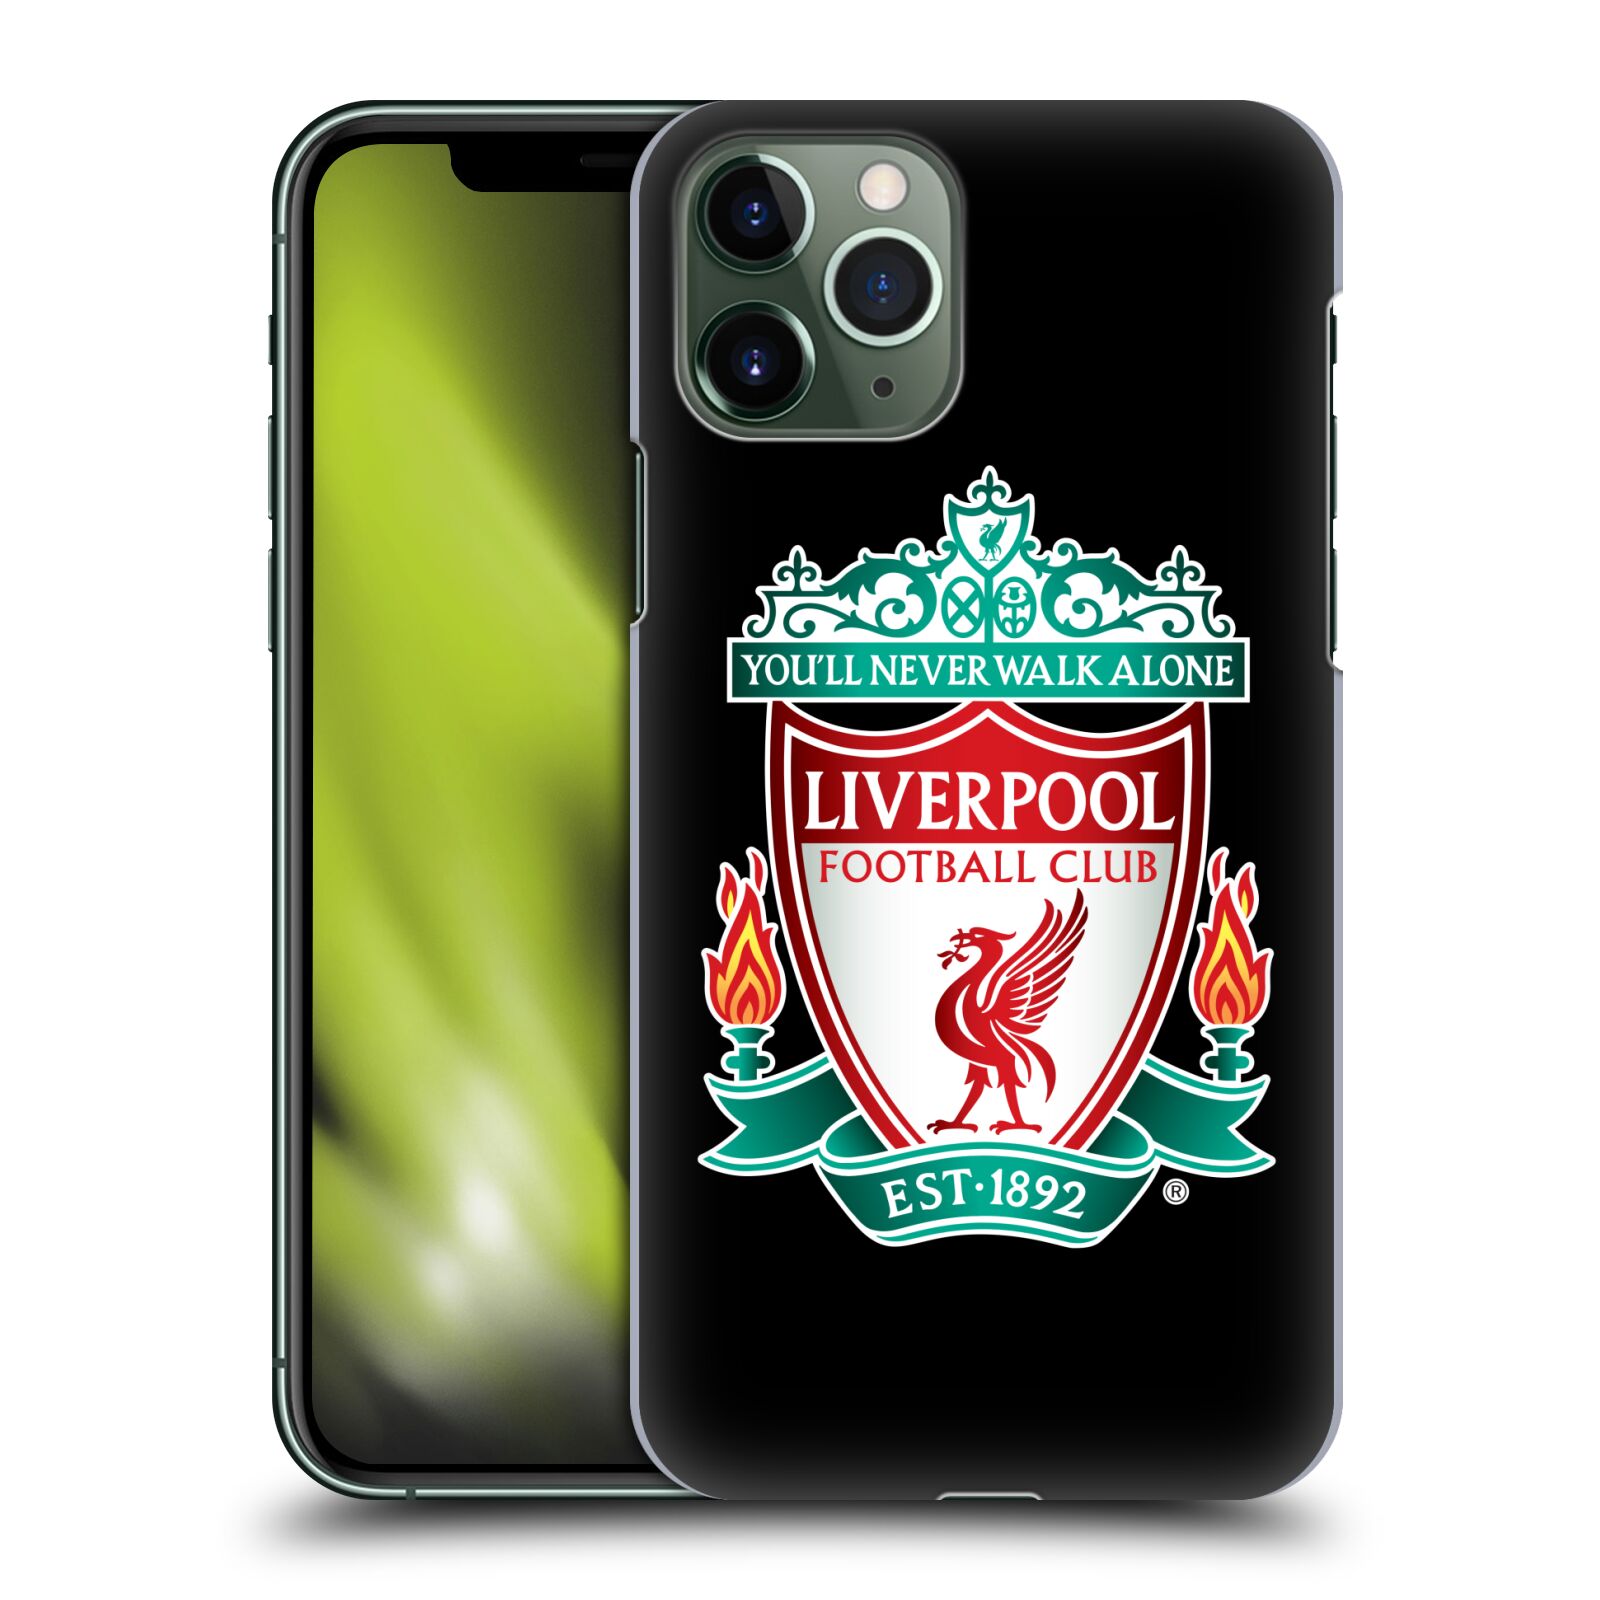 Pouzdro na mobil Apple Iphone 11 PRO - HEAD CASE - Fotbalový klub Liverpool barevný znak černé pozadí